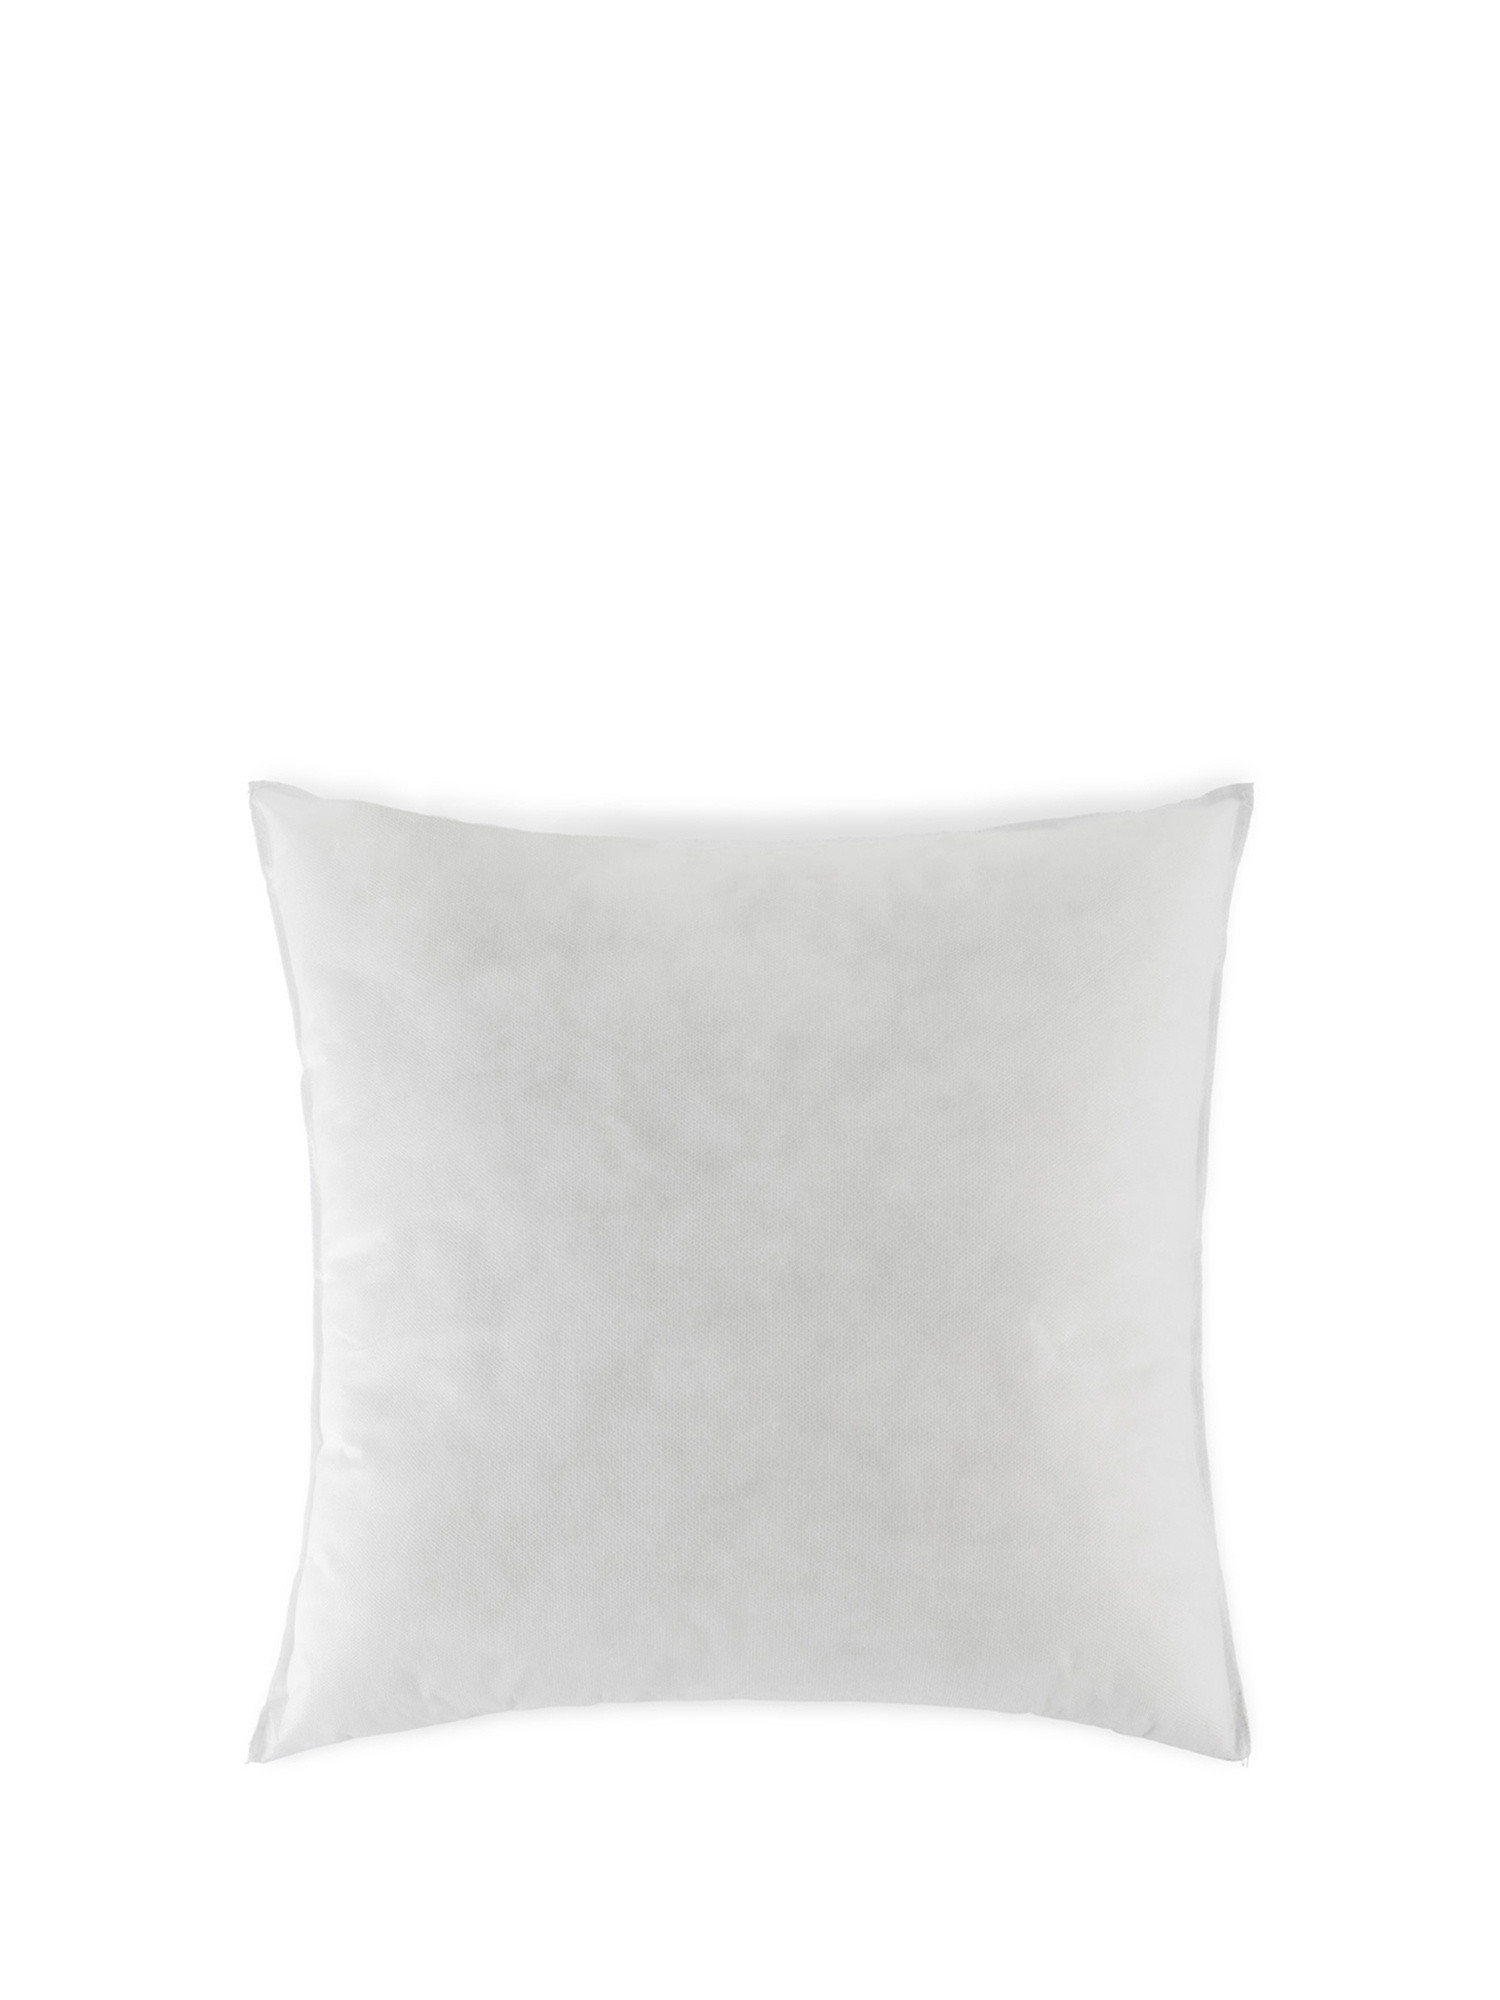 Cushion padding 50x50cm, White, large image number 0